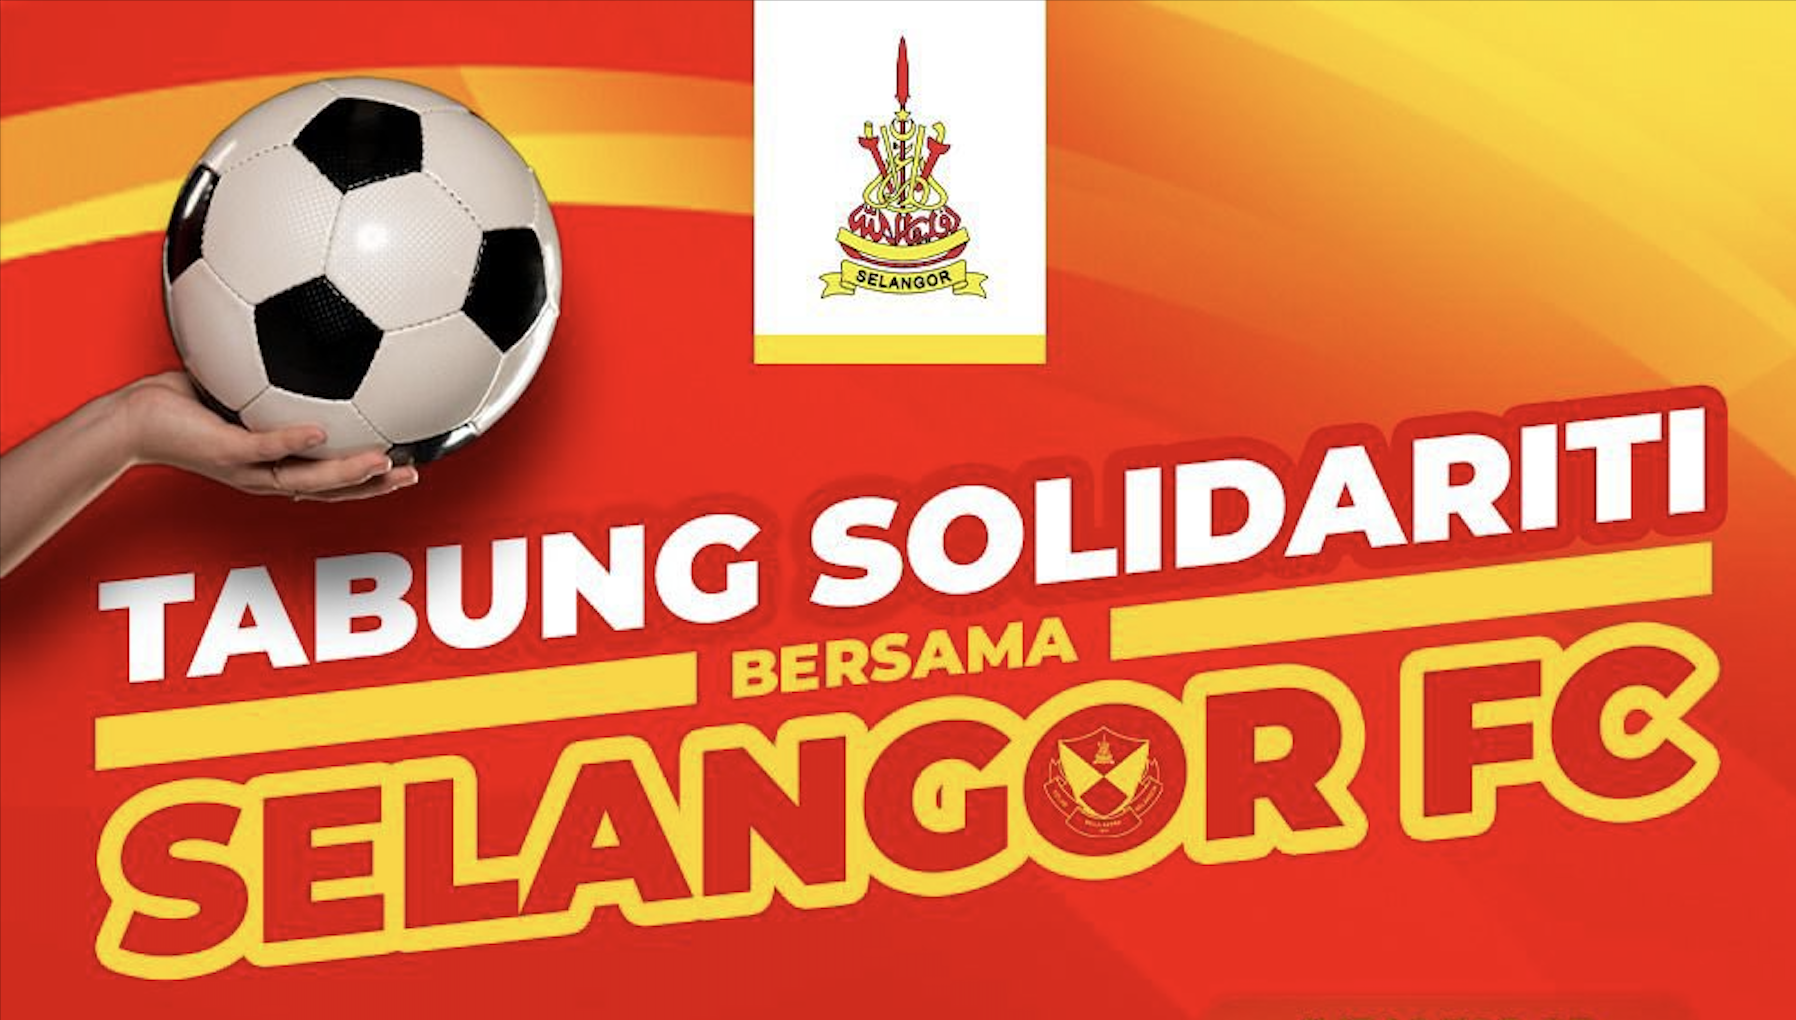 Selangor govt, fans raise RM20,000 to help pay Selangor FC’s fine